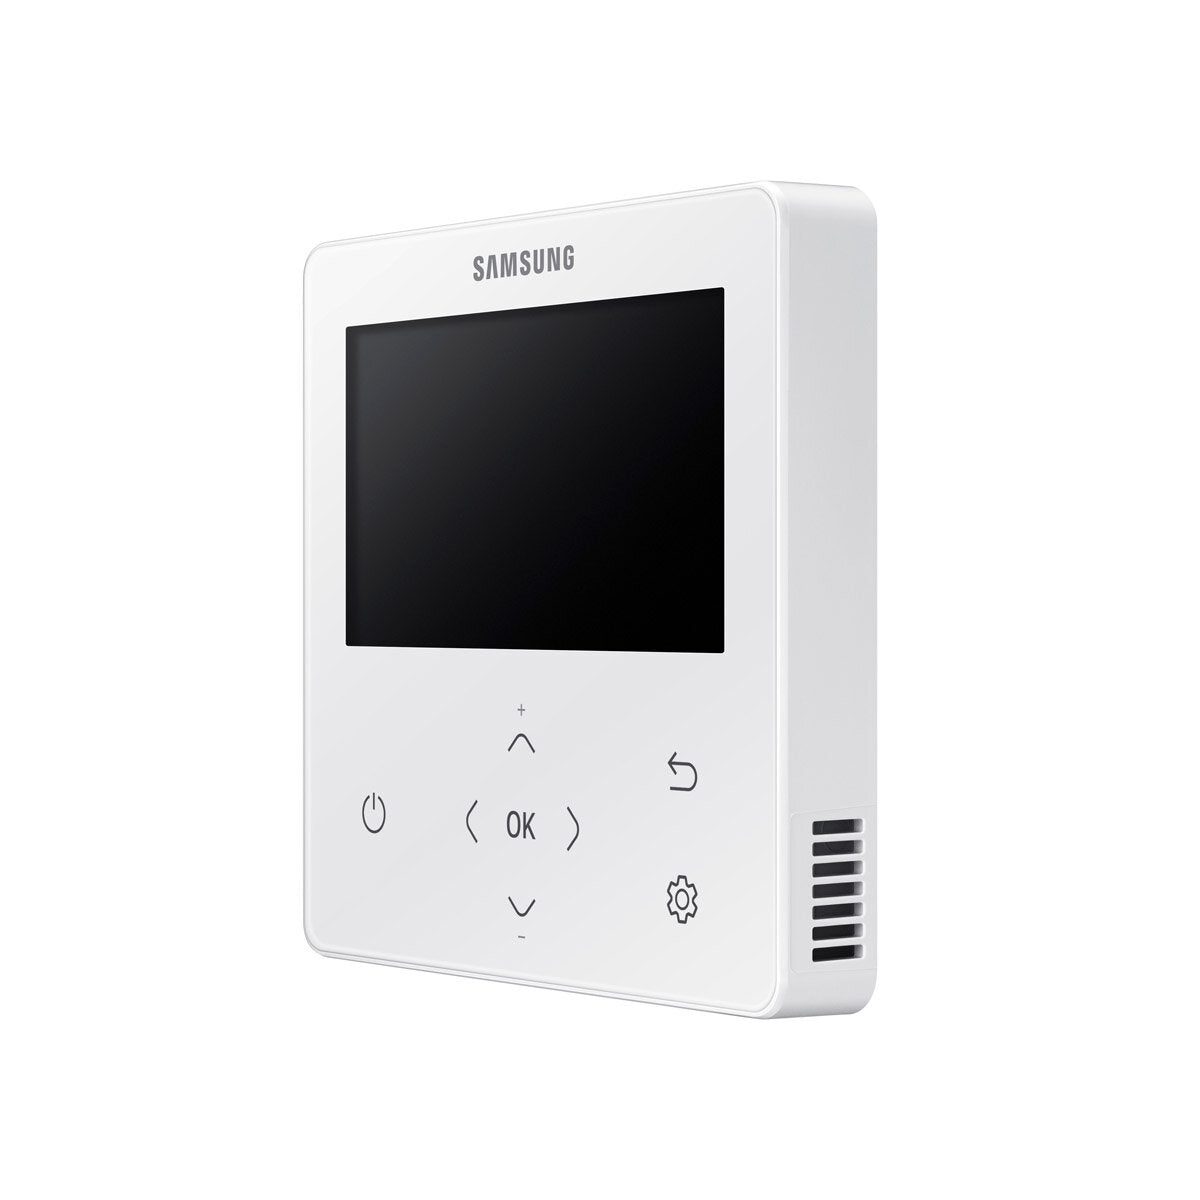 Samsung Air conditioner Windfree 4-way penta split 7000 + 9000 + 12000 + 12000 + 12000 BTU inverter A ++ outdoor unit 10.0 kW